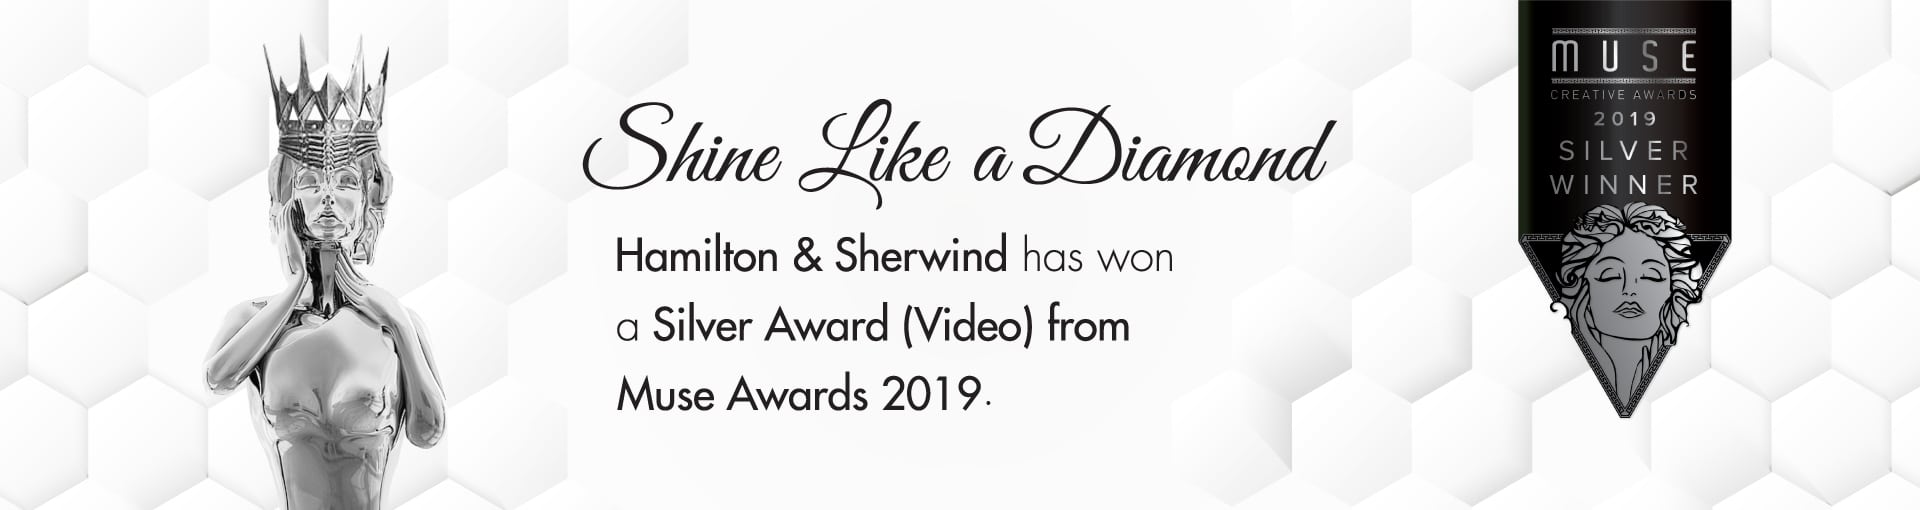 Hamilton & Sherwind an Award Winning Agency - Muse Awards 2019